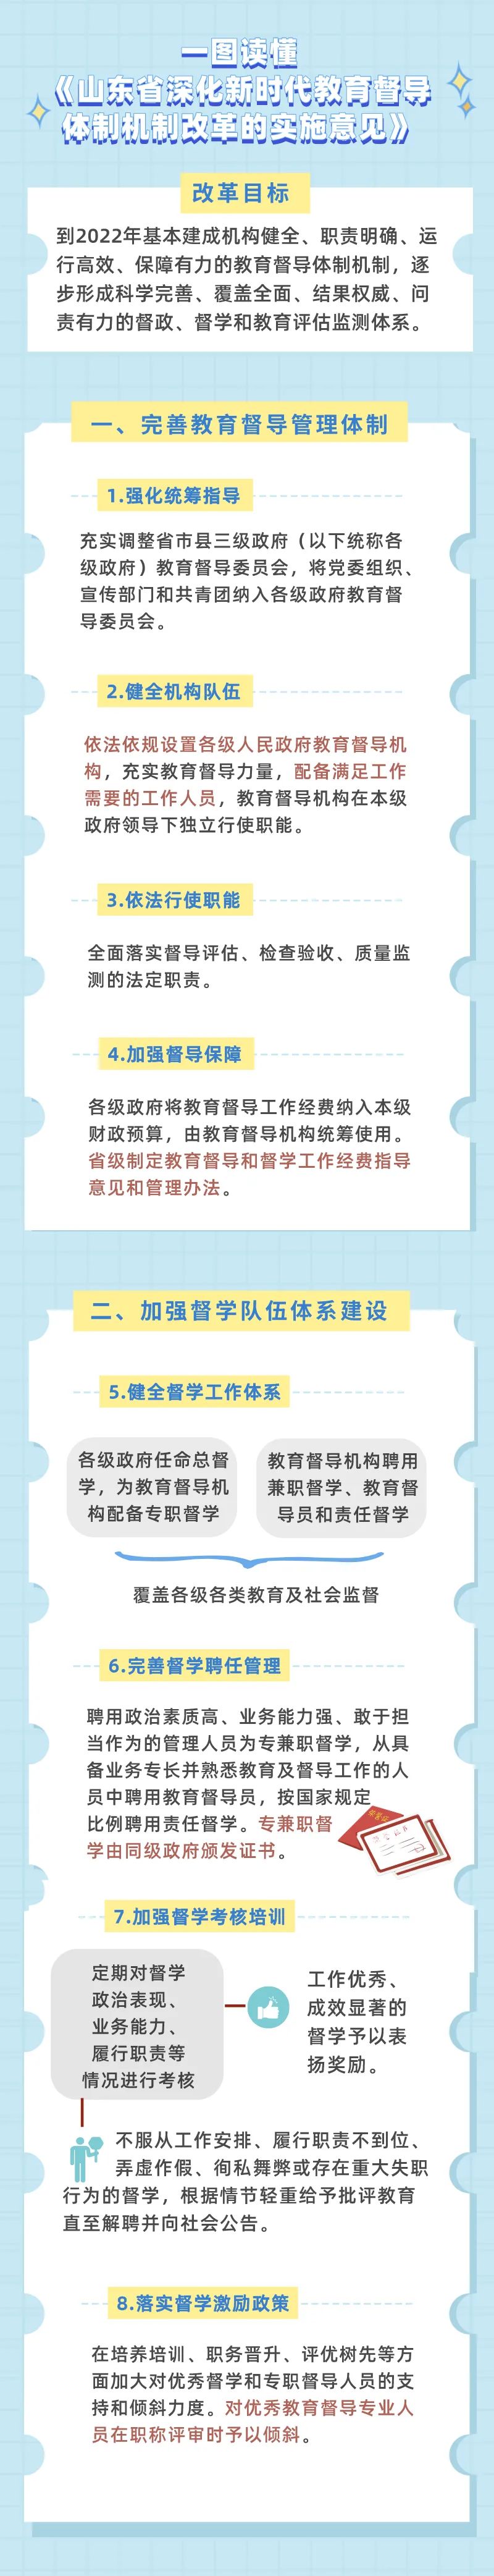 LOL比赛赌注平台:江苏省委办公厅省政府印发关于深化教育体制机制改革的实施意见